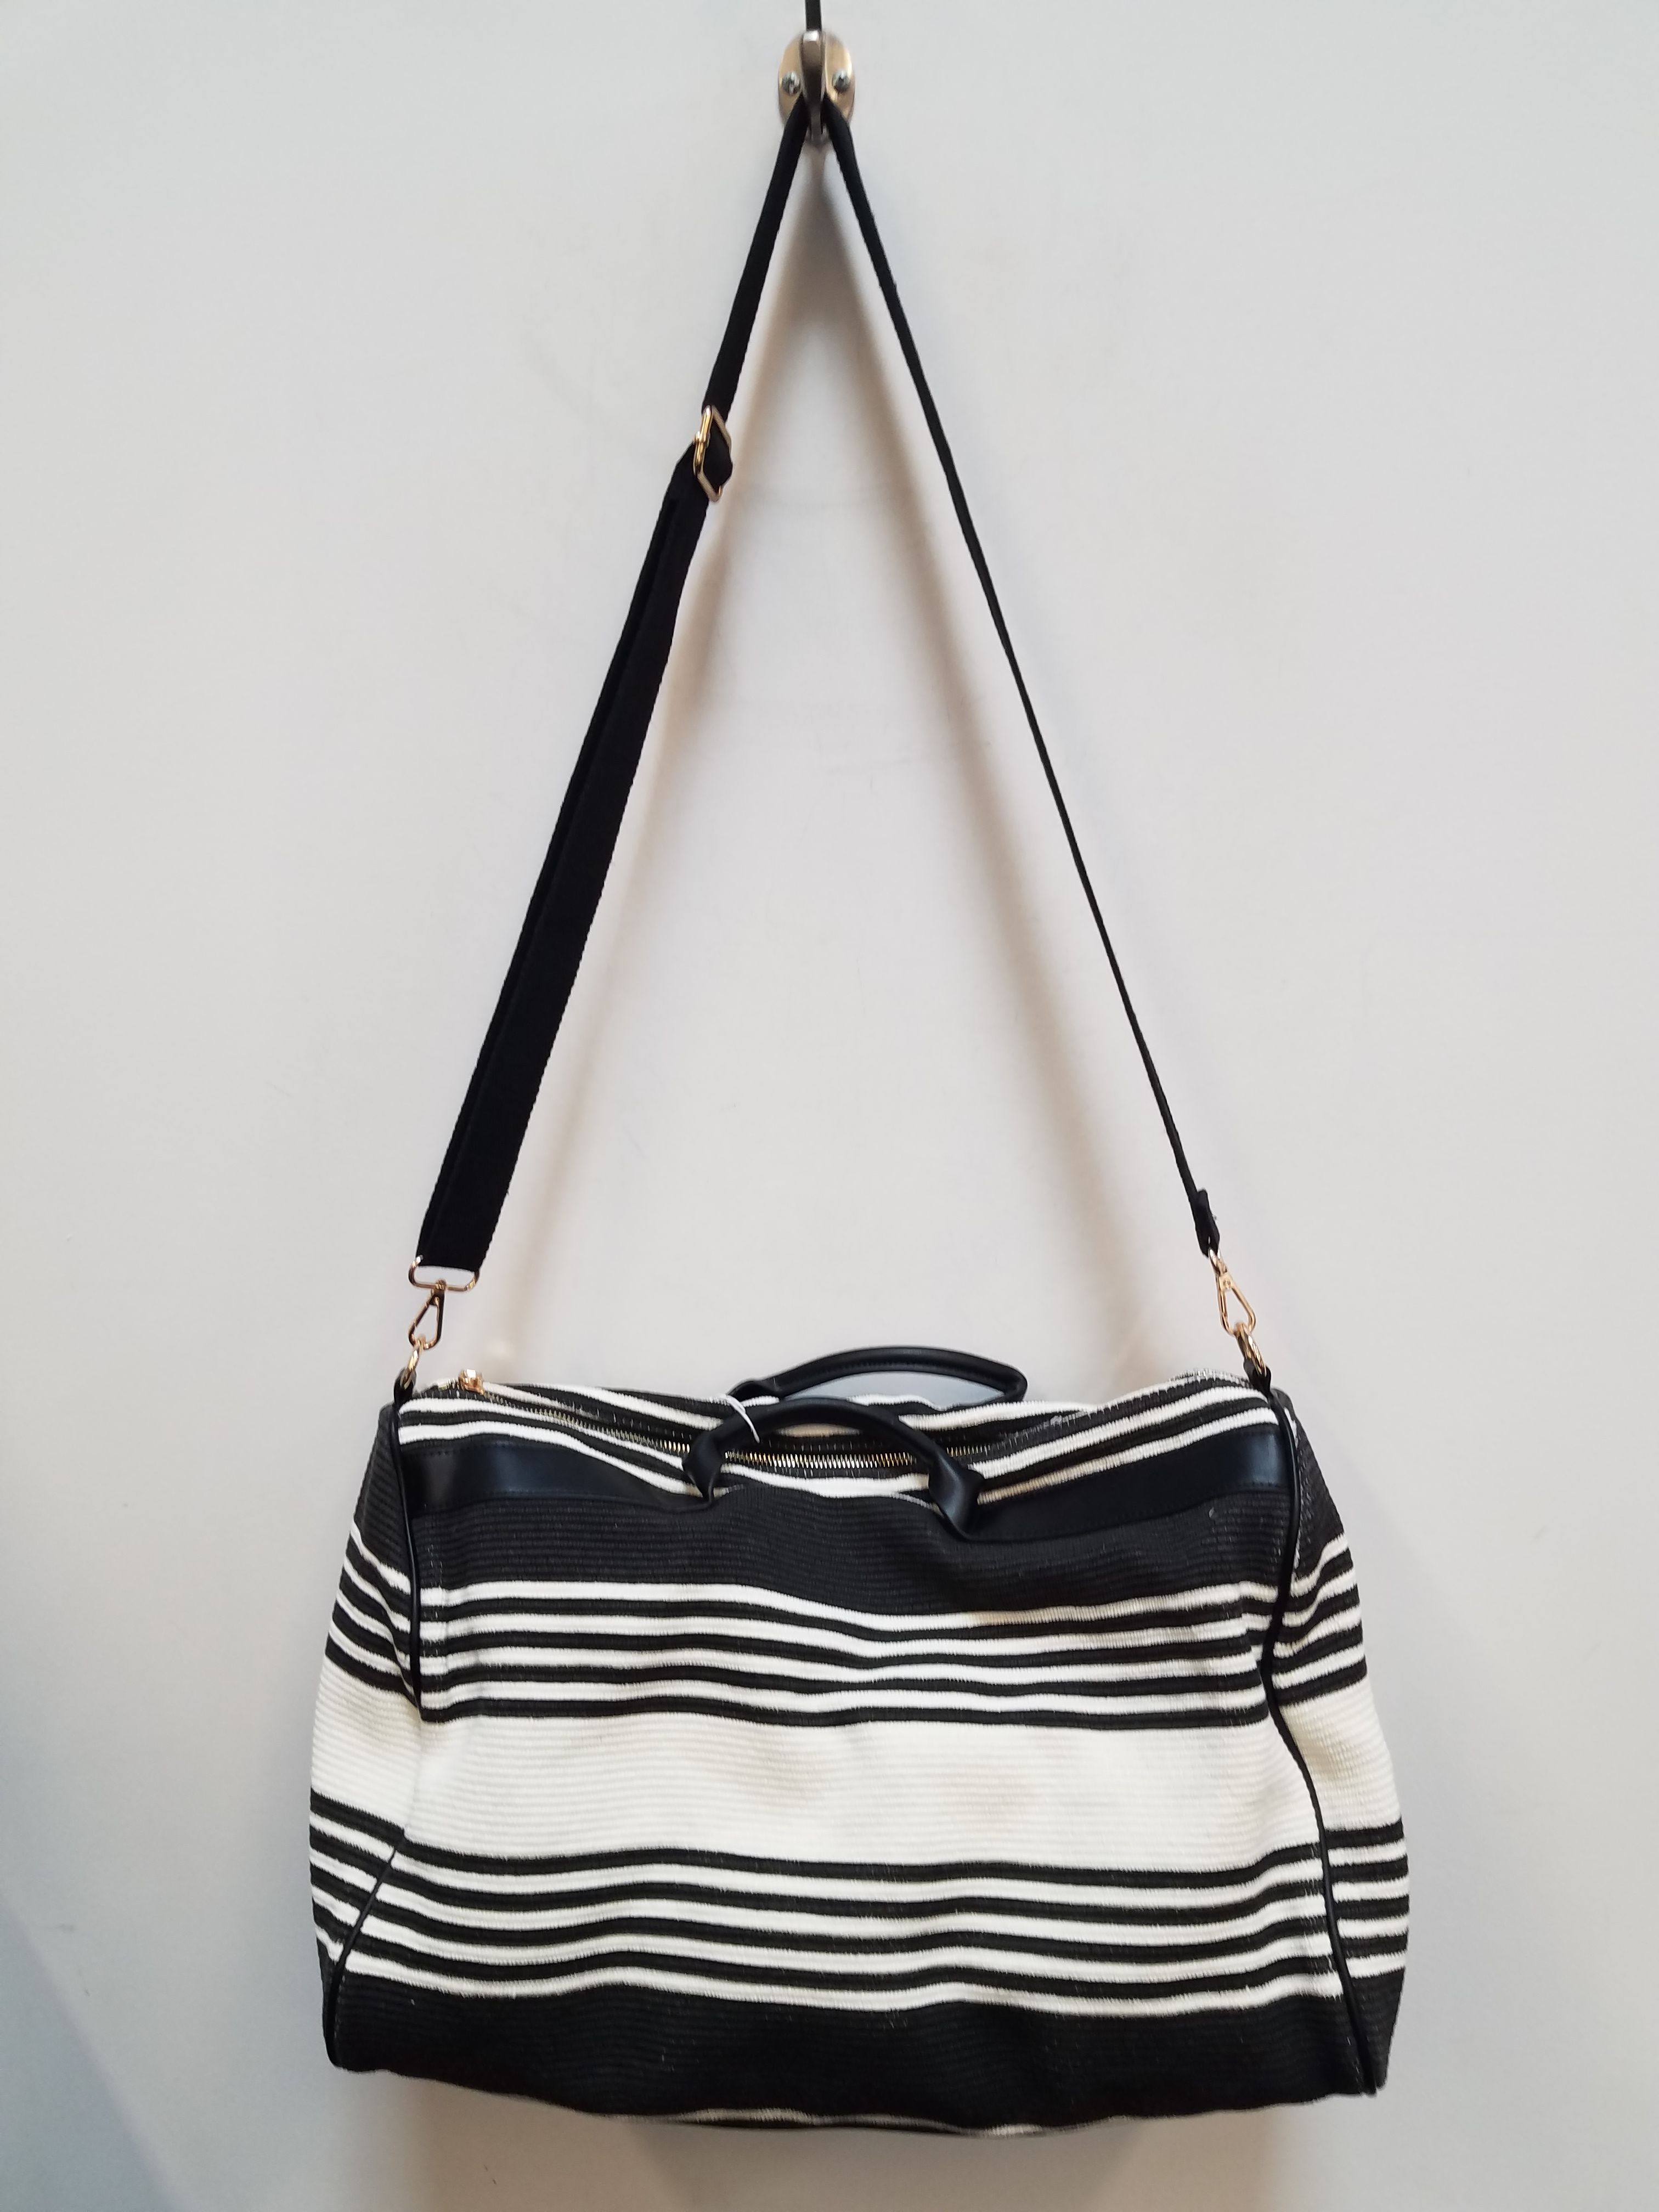 The Vendôme bag in PM & Mini sizes / Le sac Vendôme en tailles PM